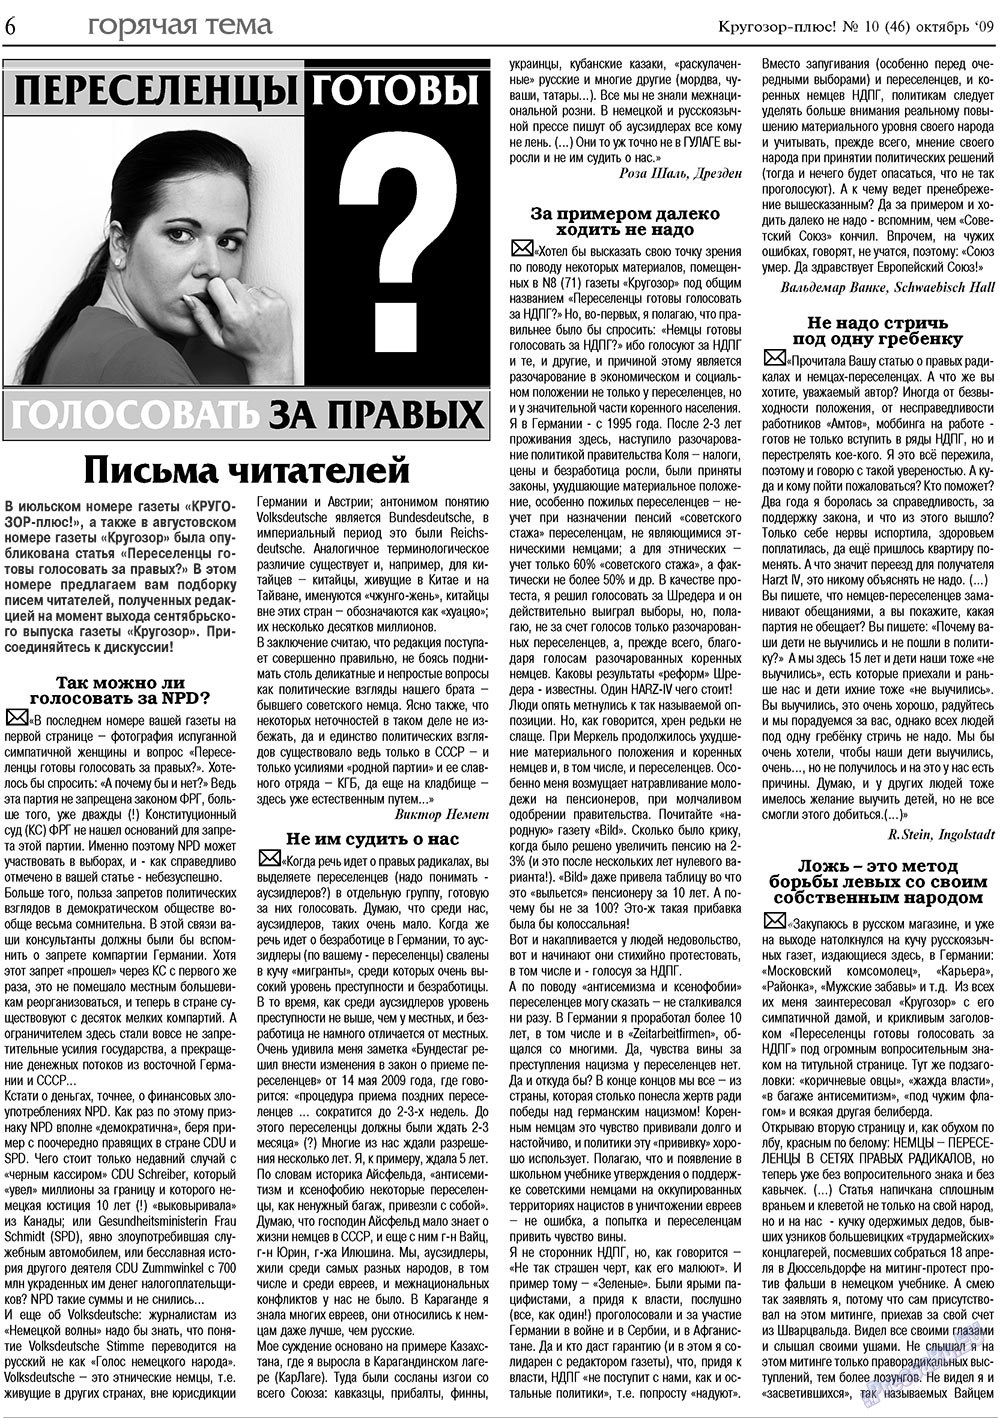 Кругозор плюс!, газета. 2009 №10 стр.6